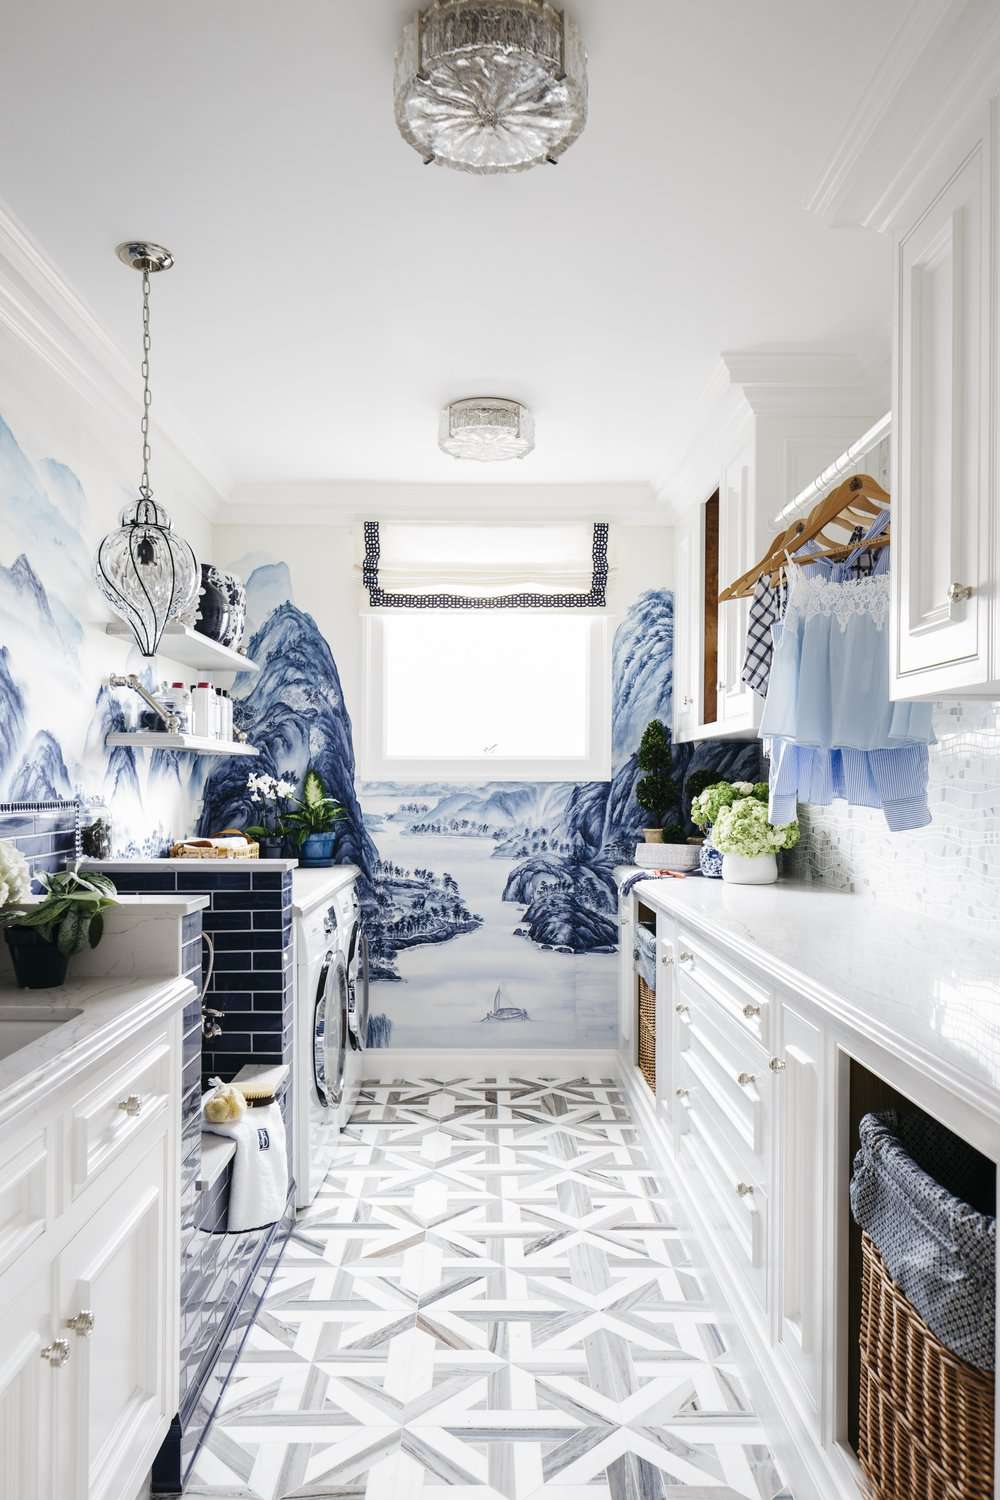 Kunstvolle Waschküche mit blauem Wellenmotiv an den Wänden.